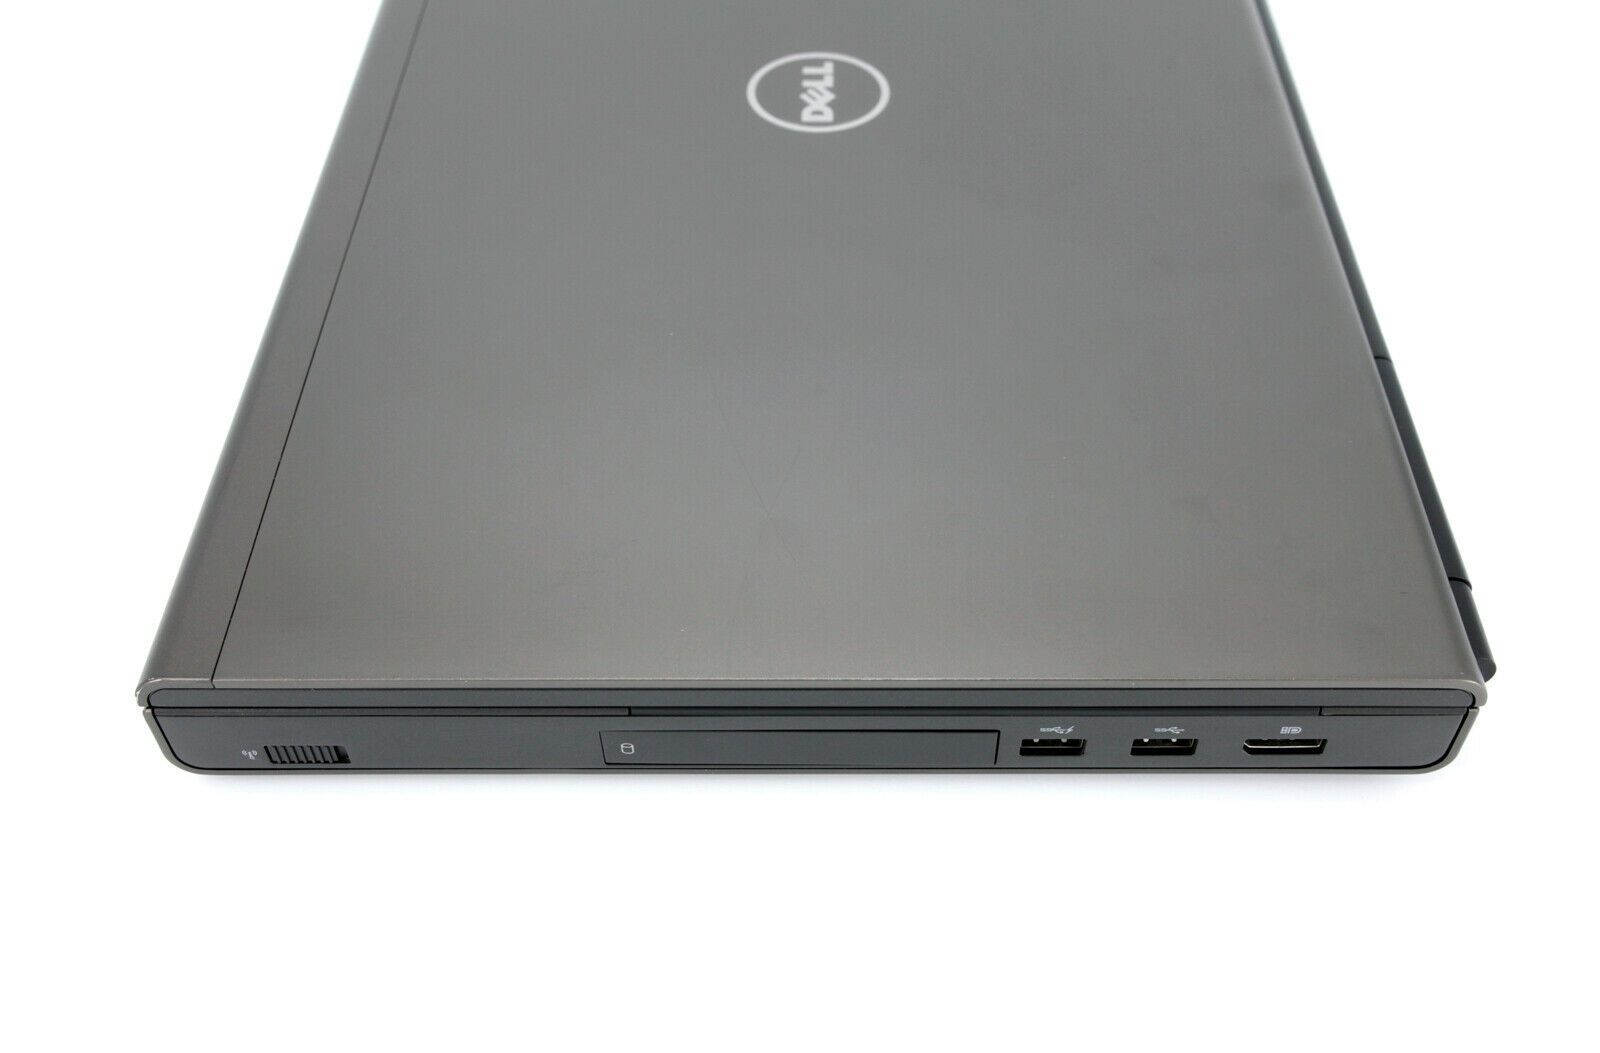 Dell Precision M6800 17" CAD Laptop: 480GB, Core i7, 16GB, Quadro Warranty VAT - CruiseTech